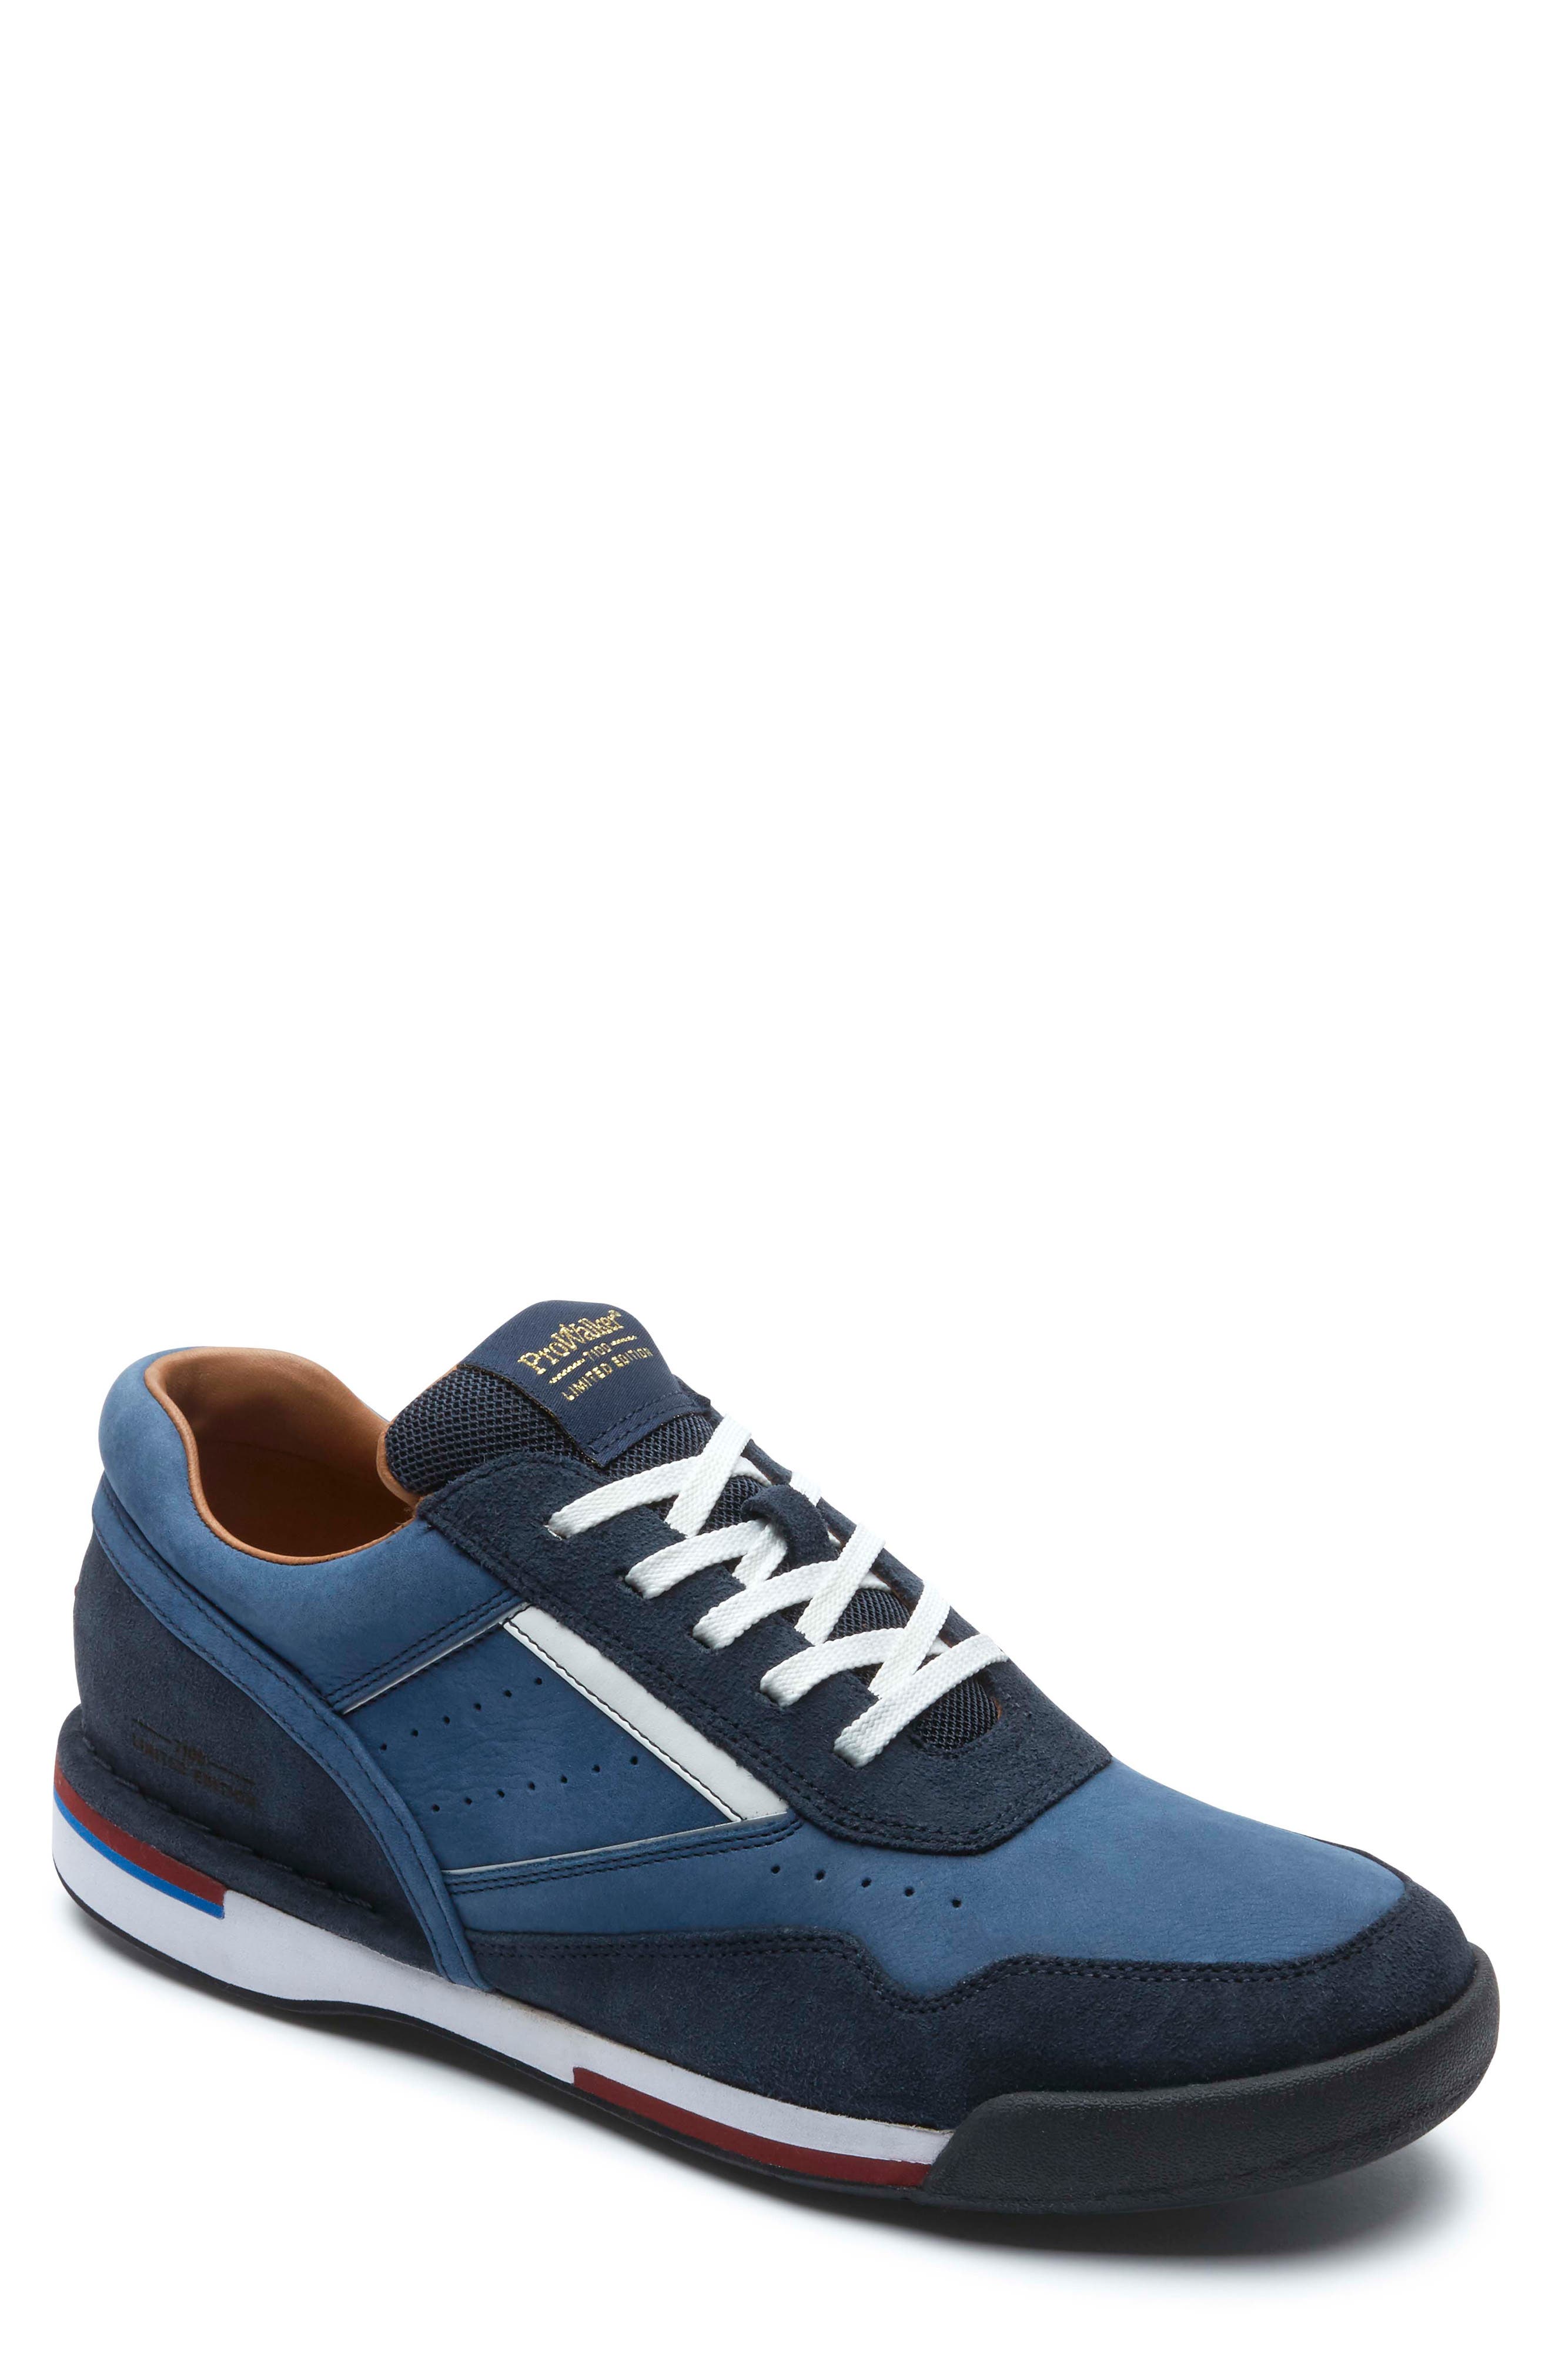 UPC 192743499255 - Men's Rockport M7100 Prowalker Sneaker, Size 13 M ...